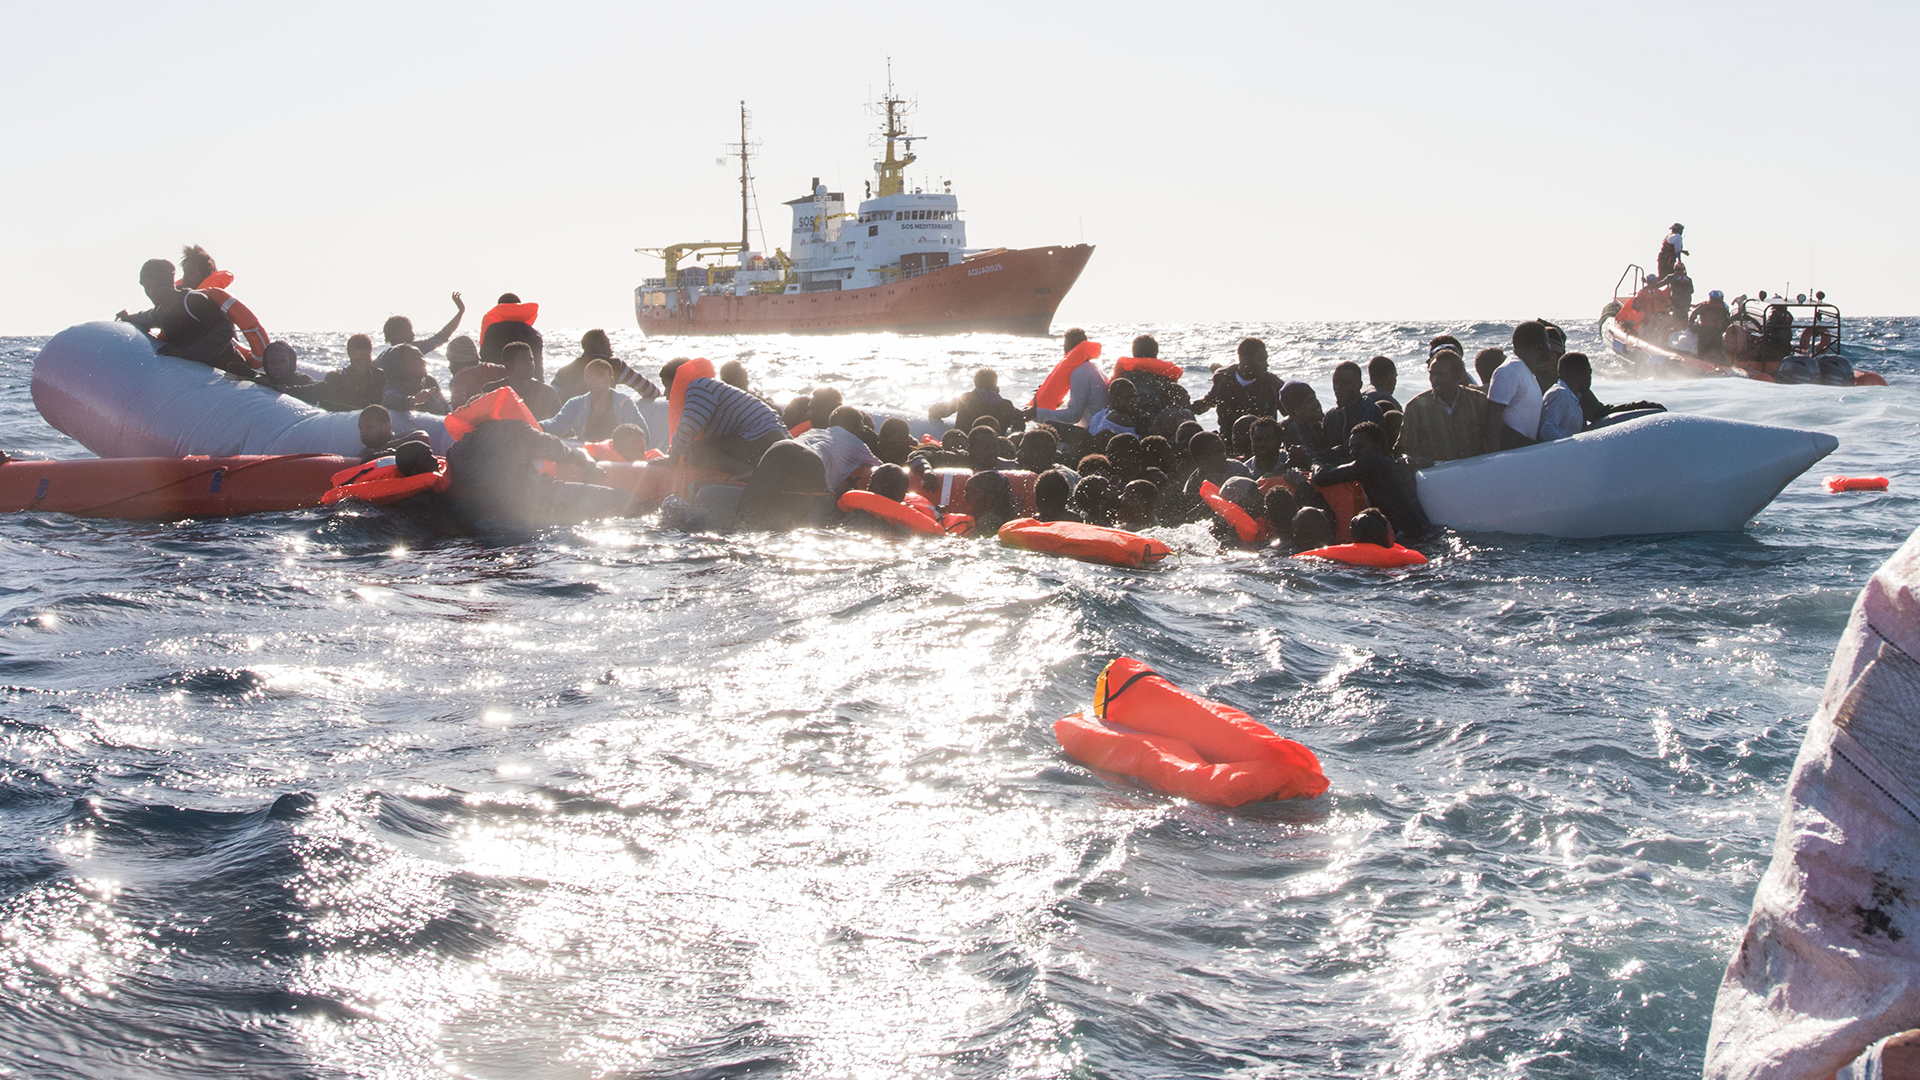 Rettungsschiff Aquarius bei der Rettung schiffbrüchiger Flüchtlinge im Mittelmeer | picture alliance/dpa